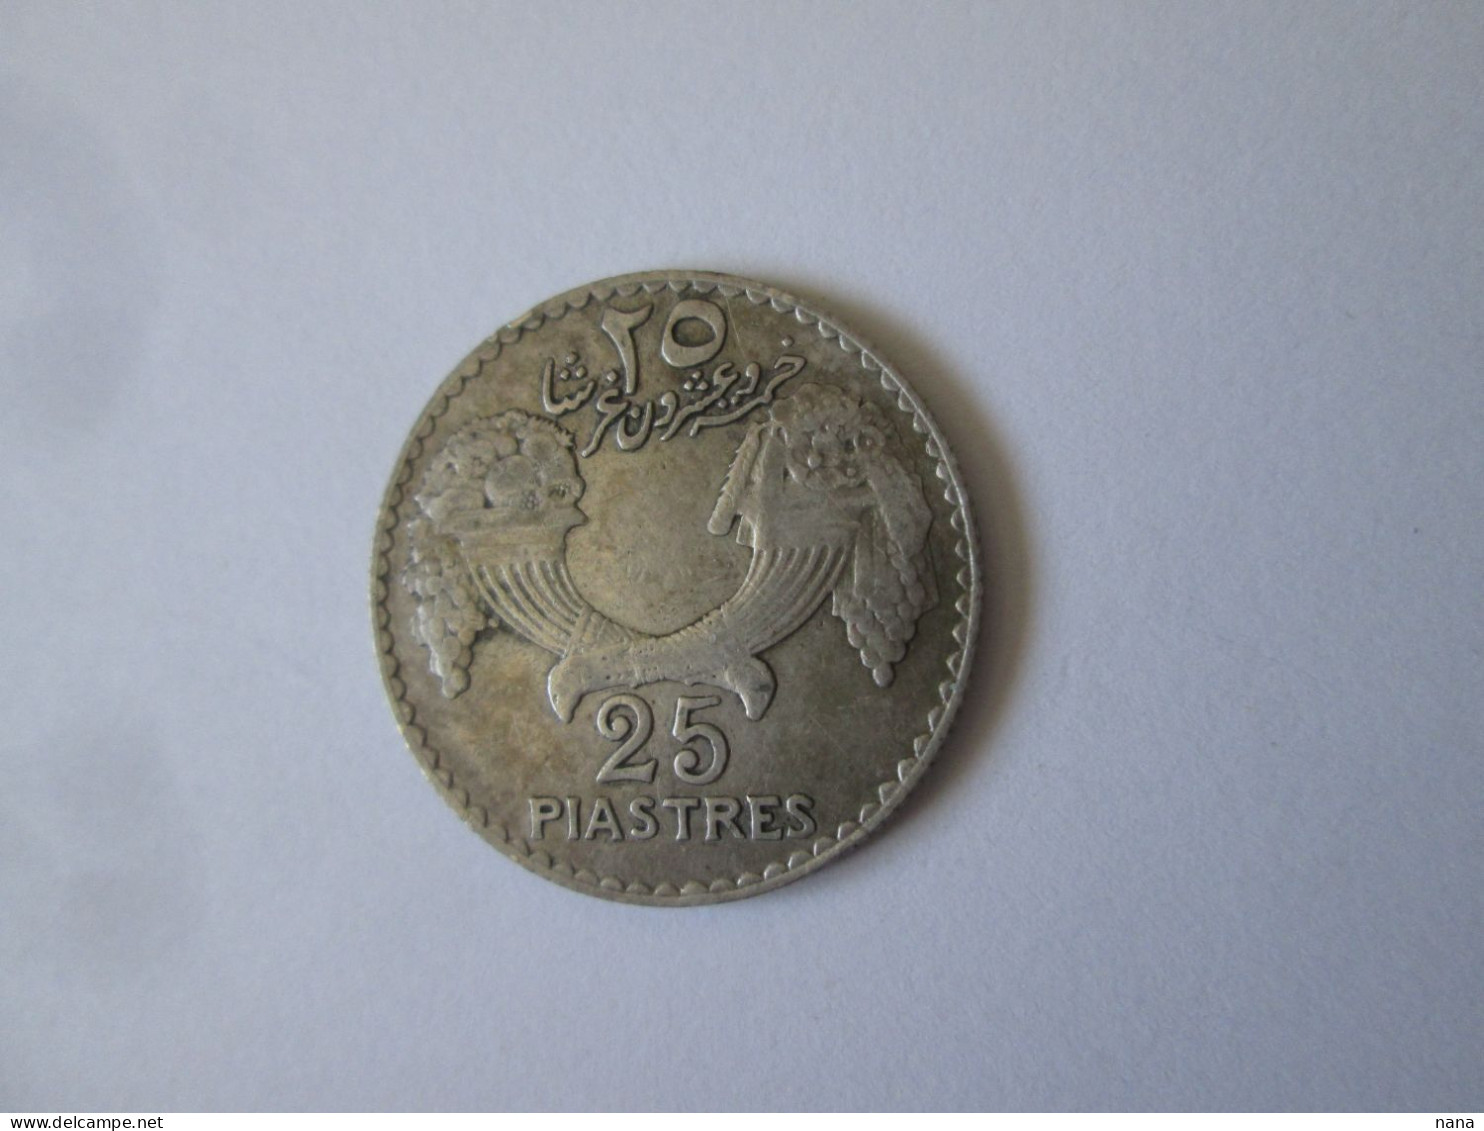 Rare! Lebanon 25 Piastres 1936 Very Nice Silver Coin - Libano